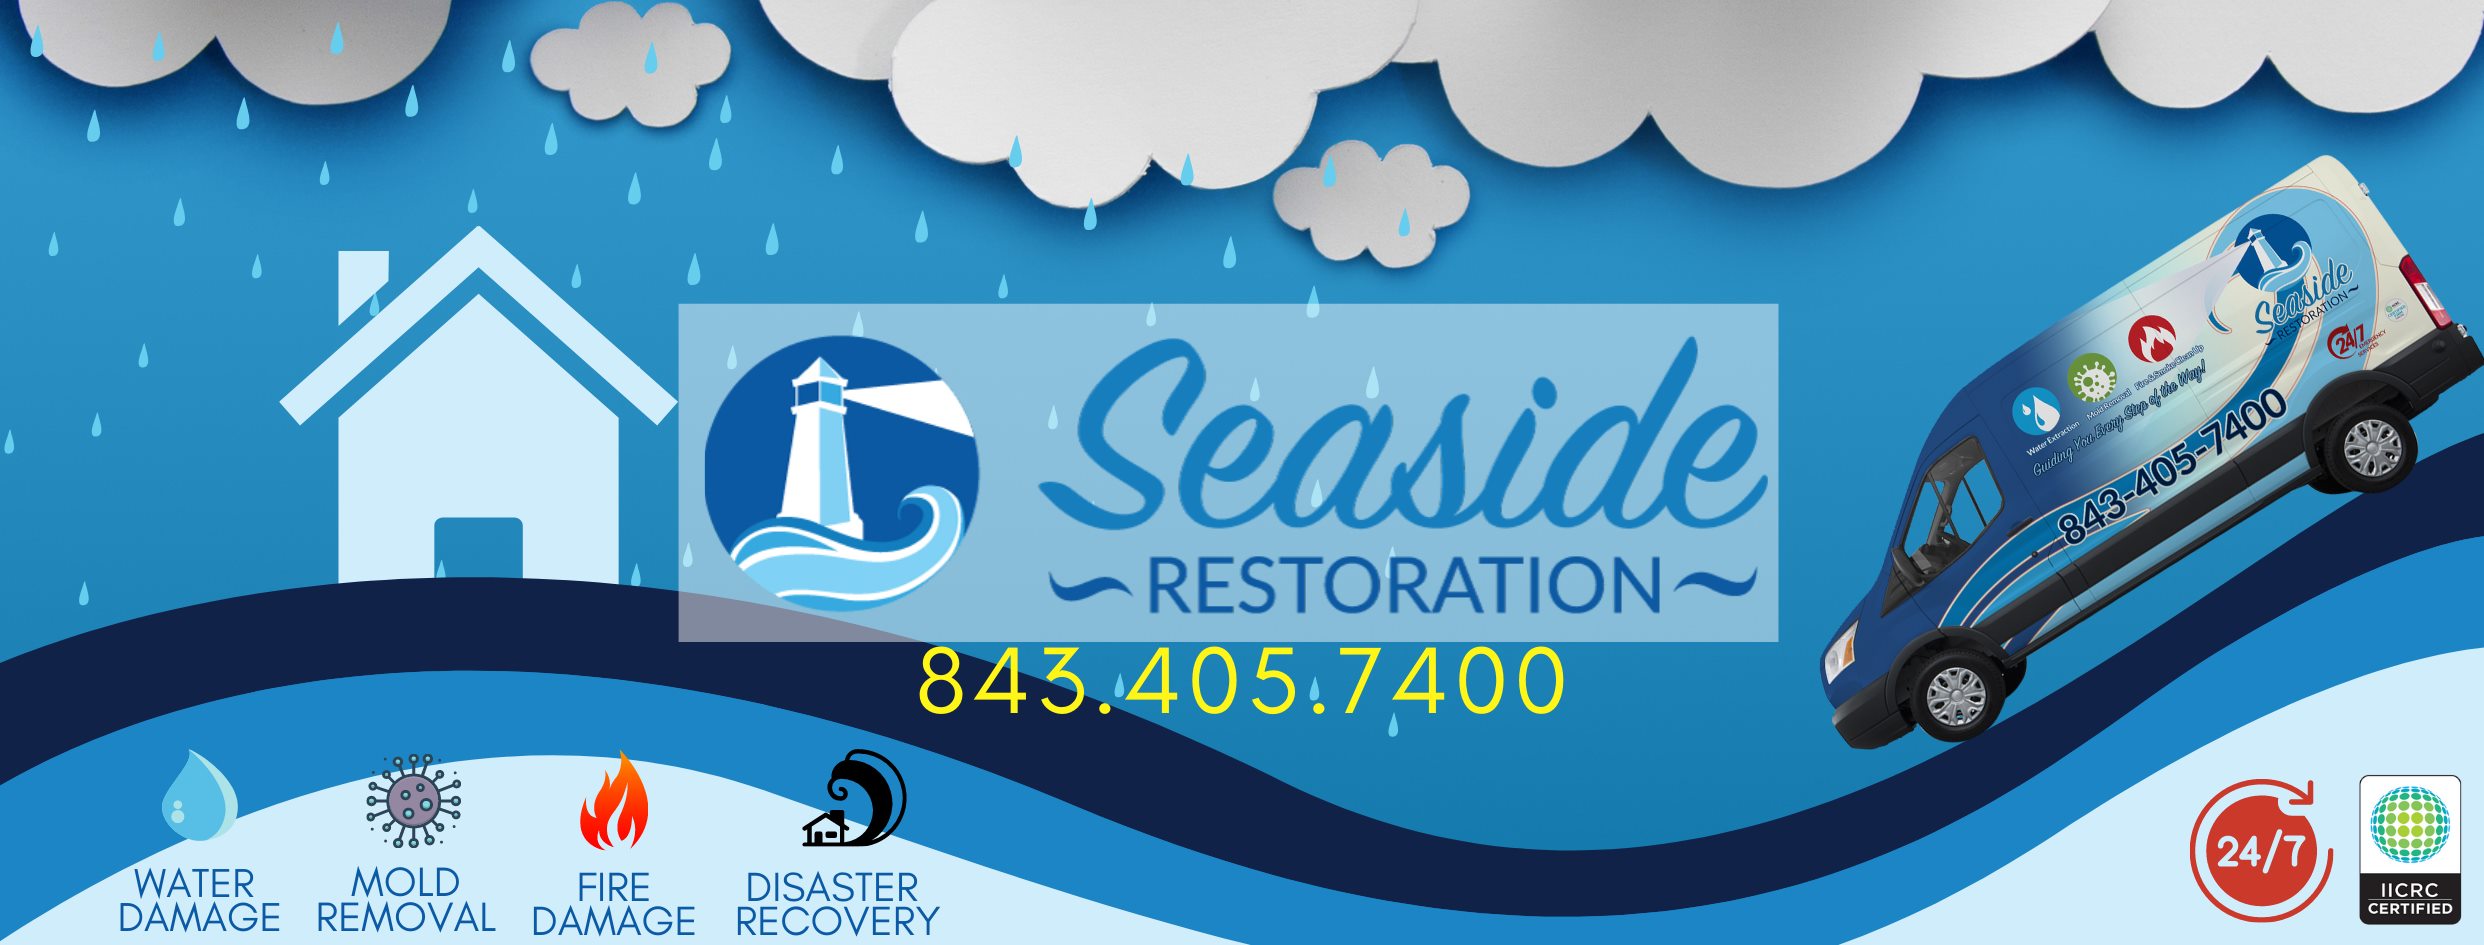 Seaside Restoration Services